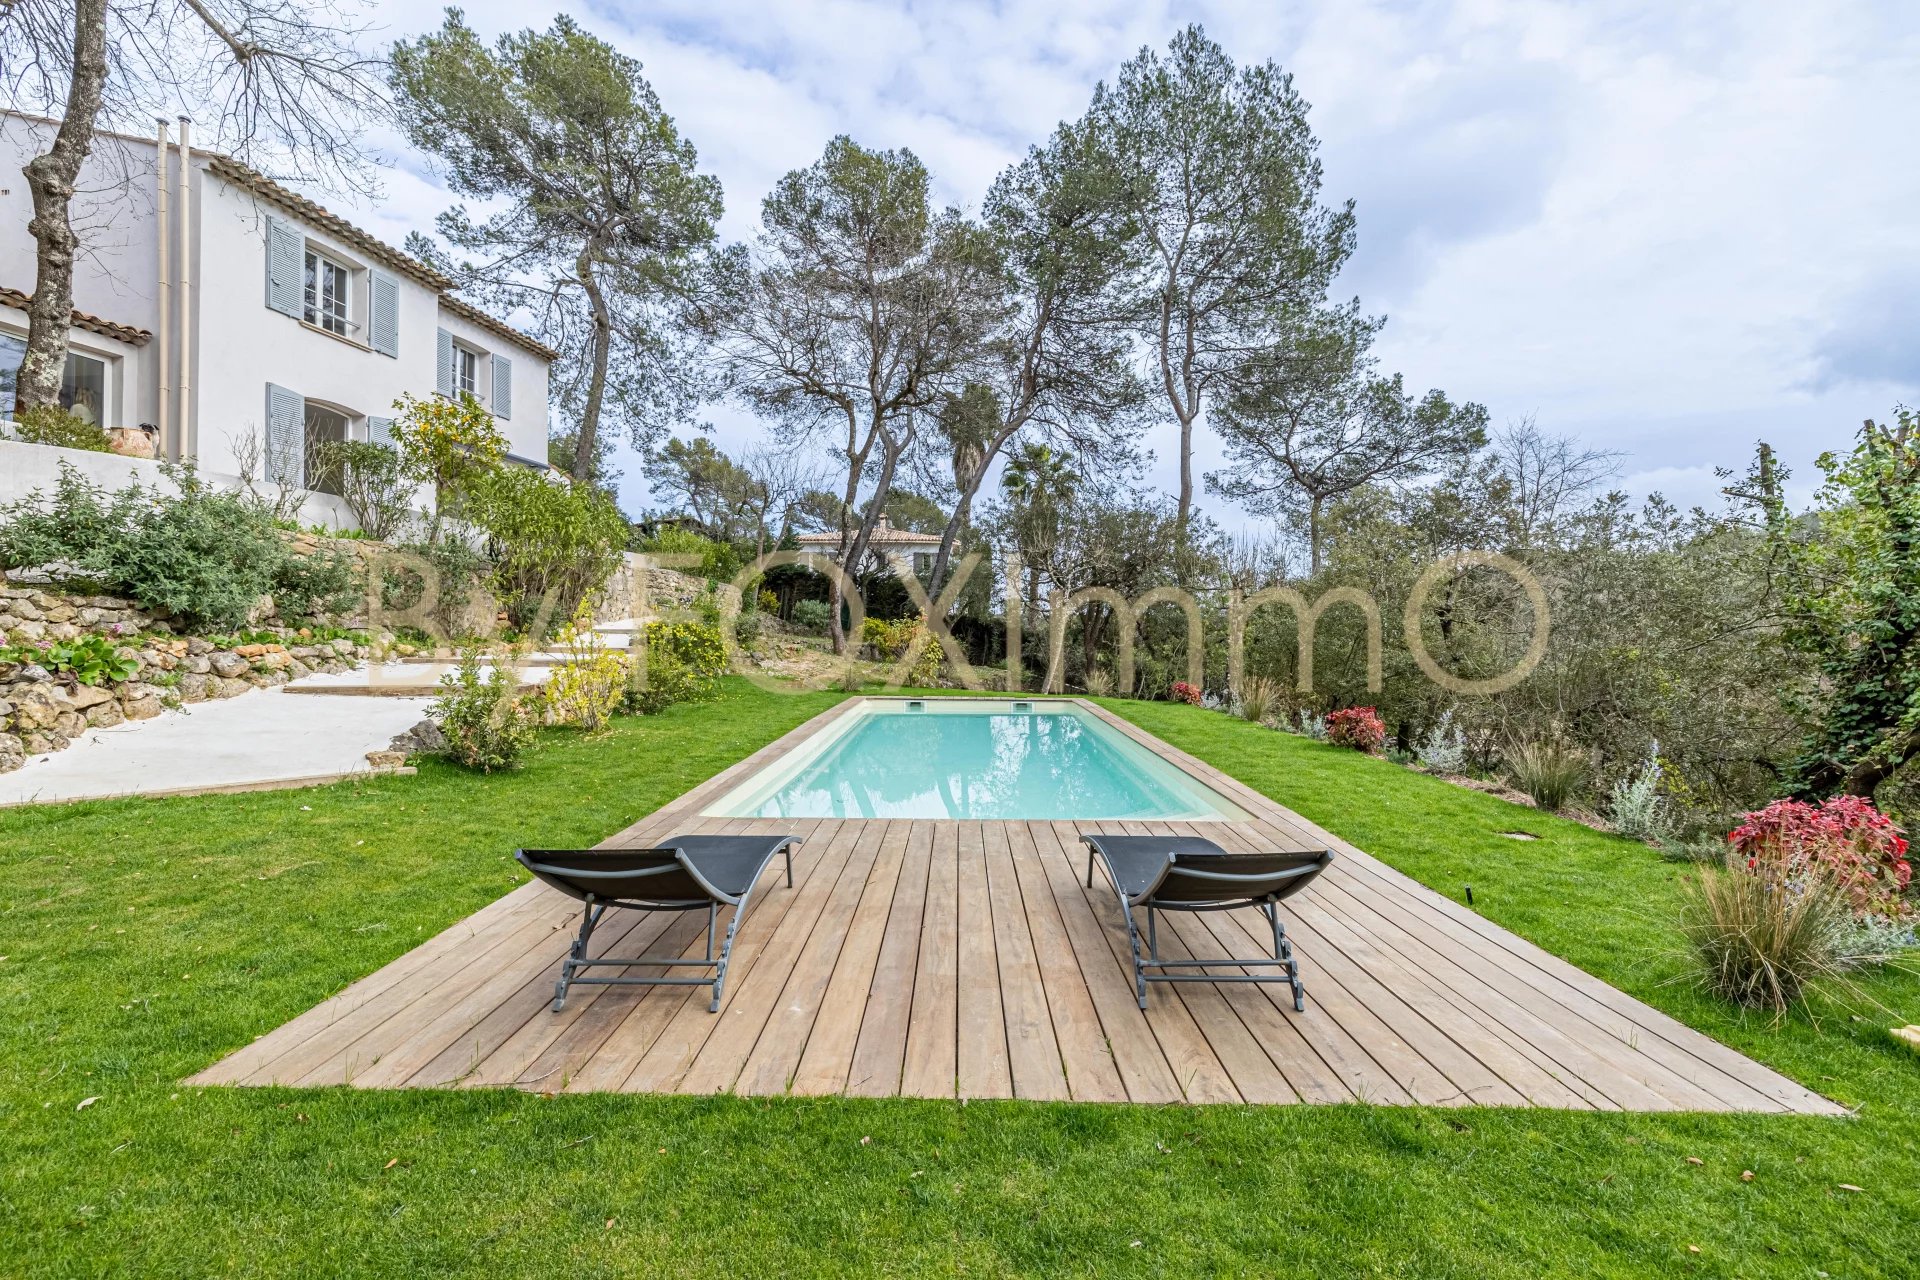 Sur la Côte d'Azur, Roquefort les Pins, Magnifique villa dans Domaine, entièrement rénovée , luxe, 4/5 chambres, piscines, Calme, Dominante